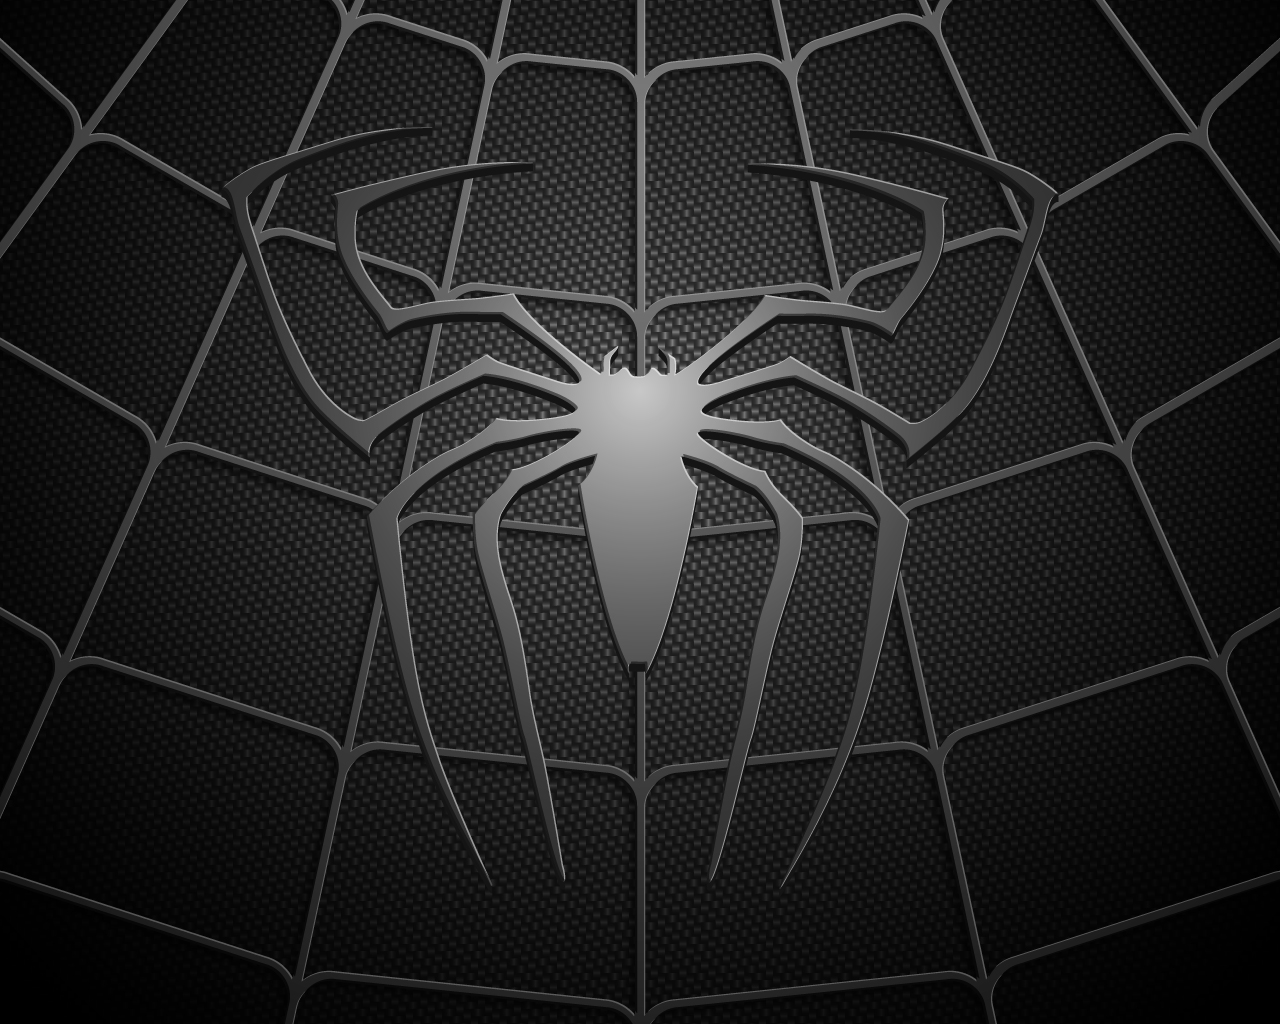 Spider Man Computer Wallpapers Desktop Backgrounds 1280x1024 ID